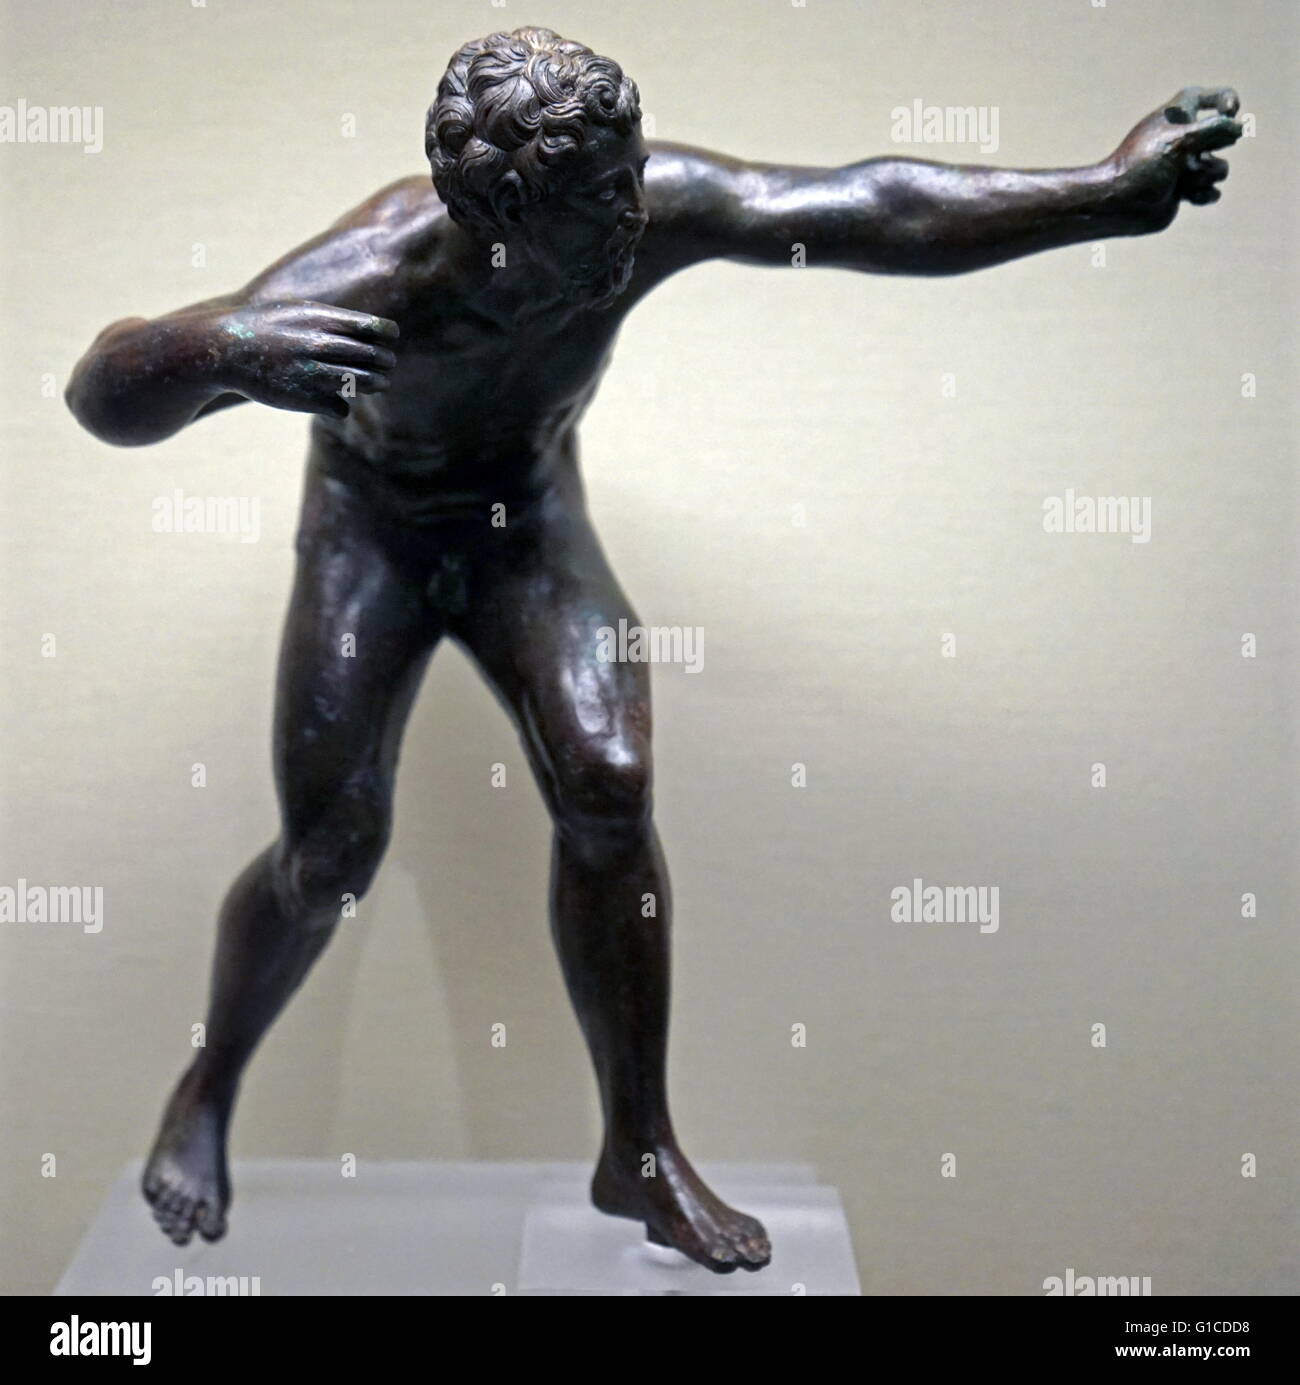 Bronzefigur eines Bogenschützen, die Herkules sein könnte. Stockfoto